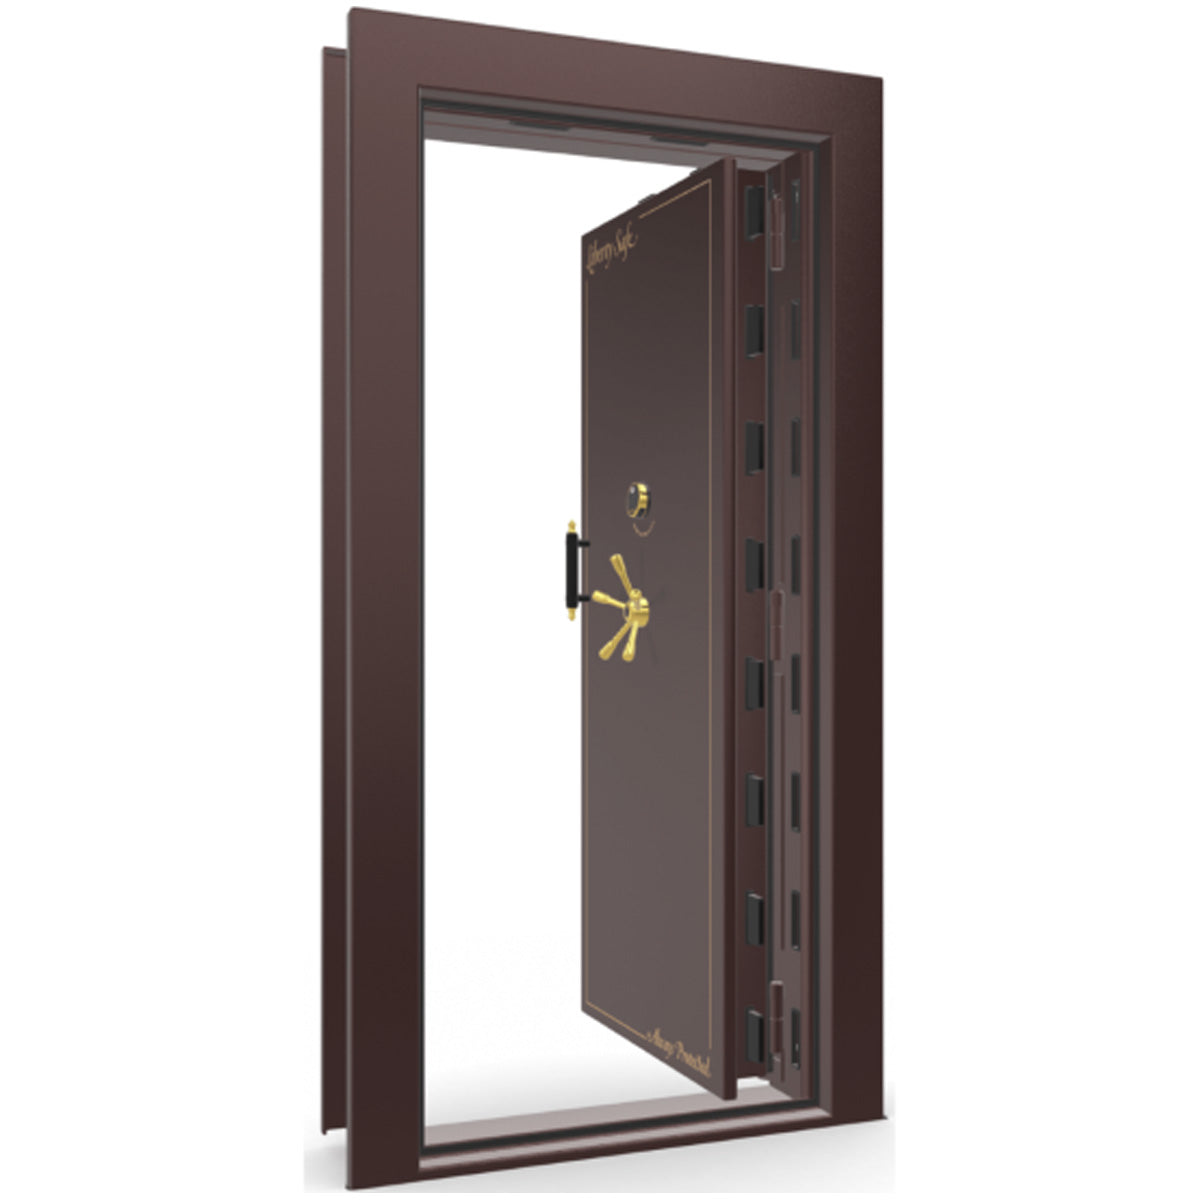 The Beast Vault Door in Burgundy Gloss with Brass Electronic Lock, Right Inswing, door open.